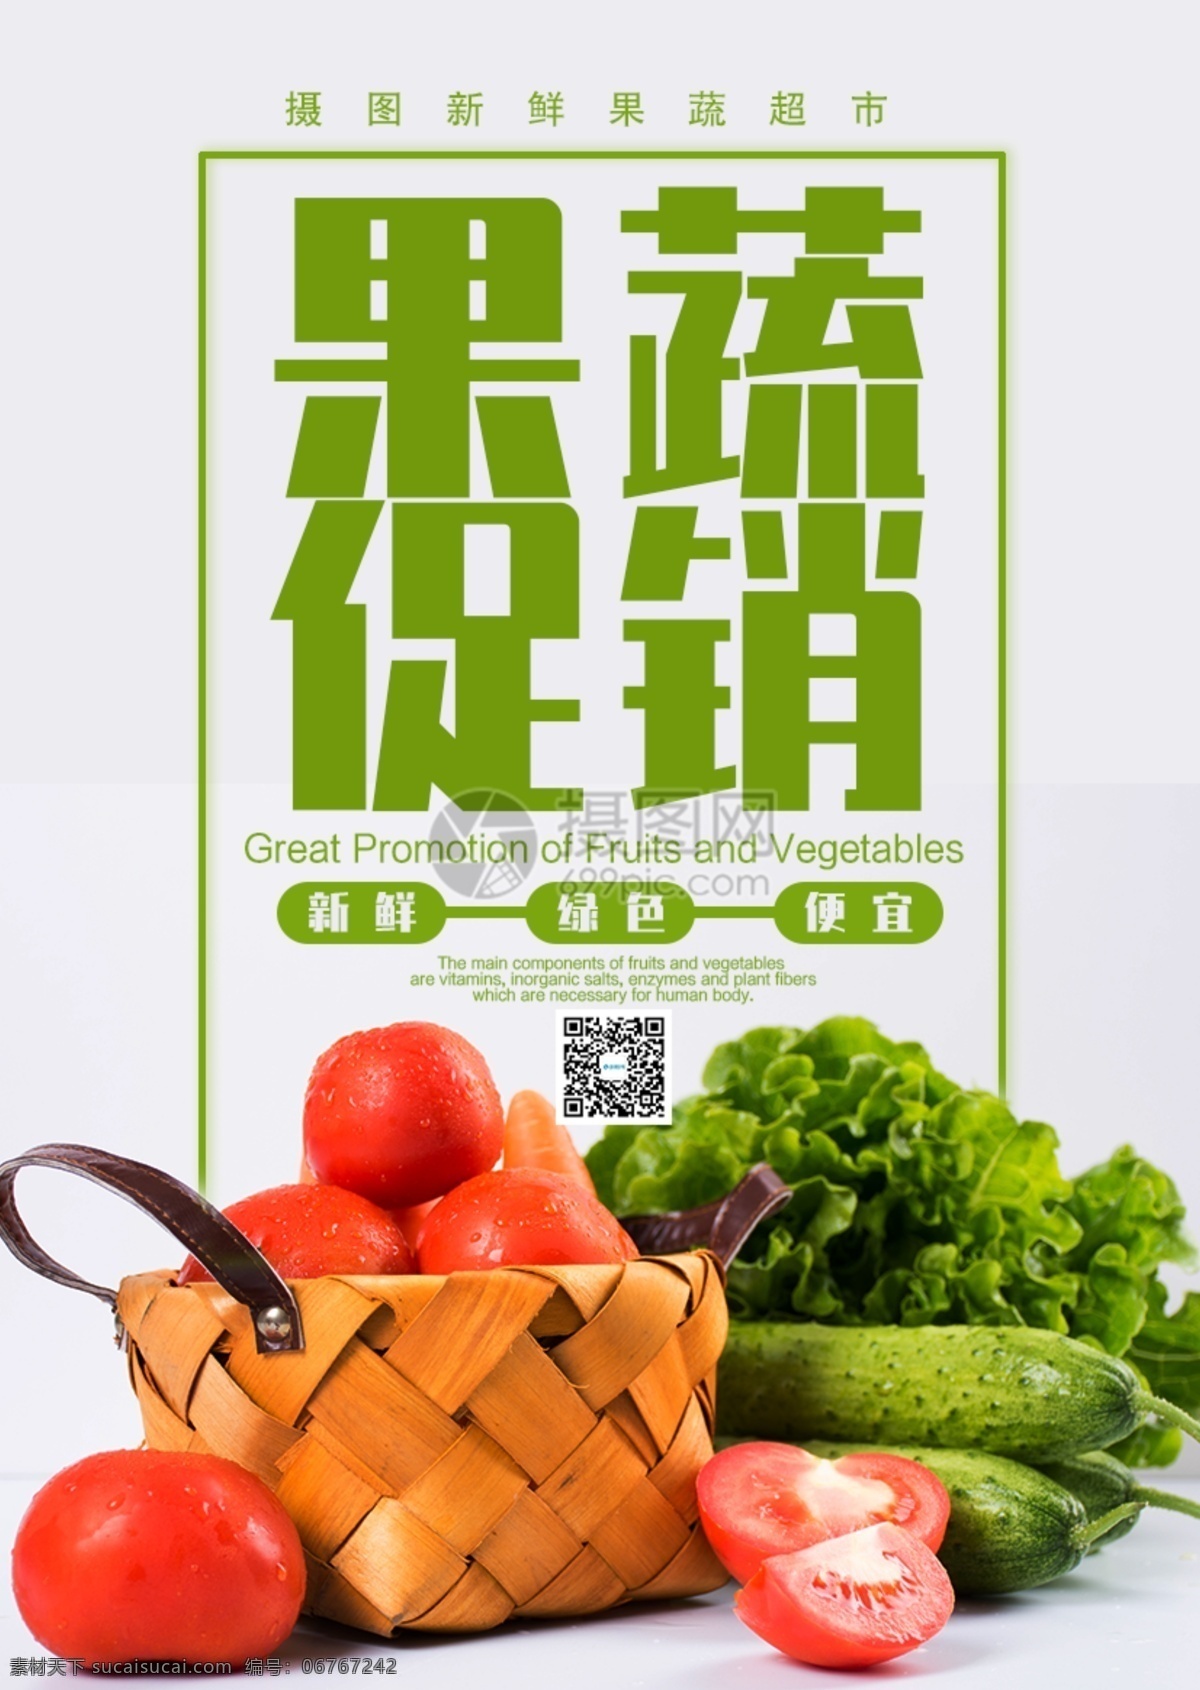 果蔬促销海报 果蔬 时蔬 蔬菜 有机蔬菜 绿色食品 健康 纯天然 时令蔬菜 新鲜 无公害 蔬菜海报